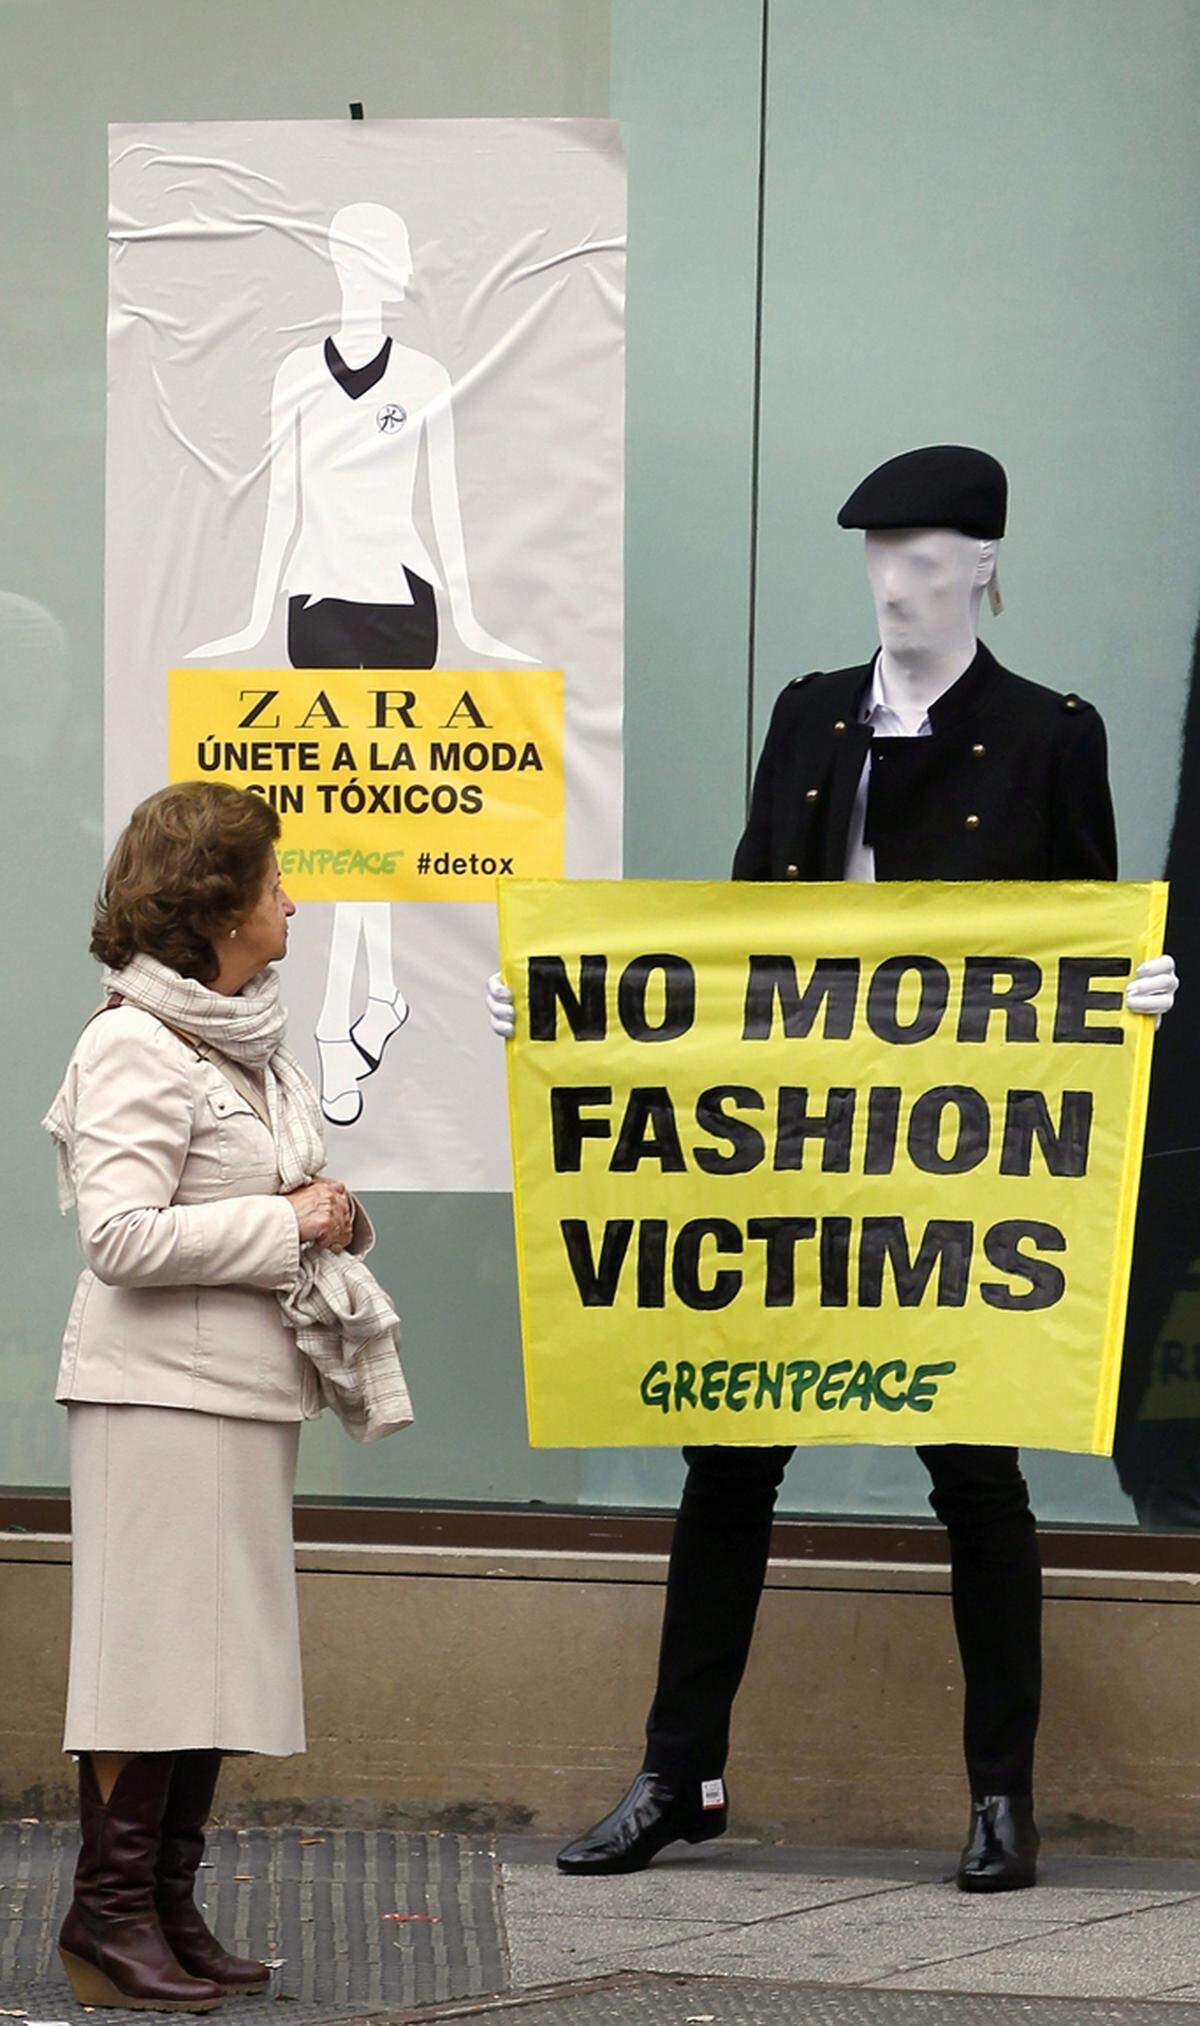 Die "Detox"-Kampagne von Greenpeace gegen die Textilkette Zara zeigt Wirkung. Zara und der Mutterkonzern Inditex haben sich dazu verpflichtet, die Freisetzung von gefährlichen Chemikalien bis 2012 zu beenden.